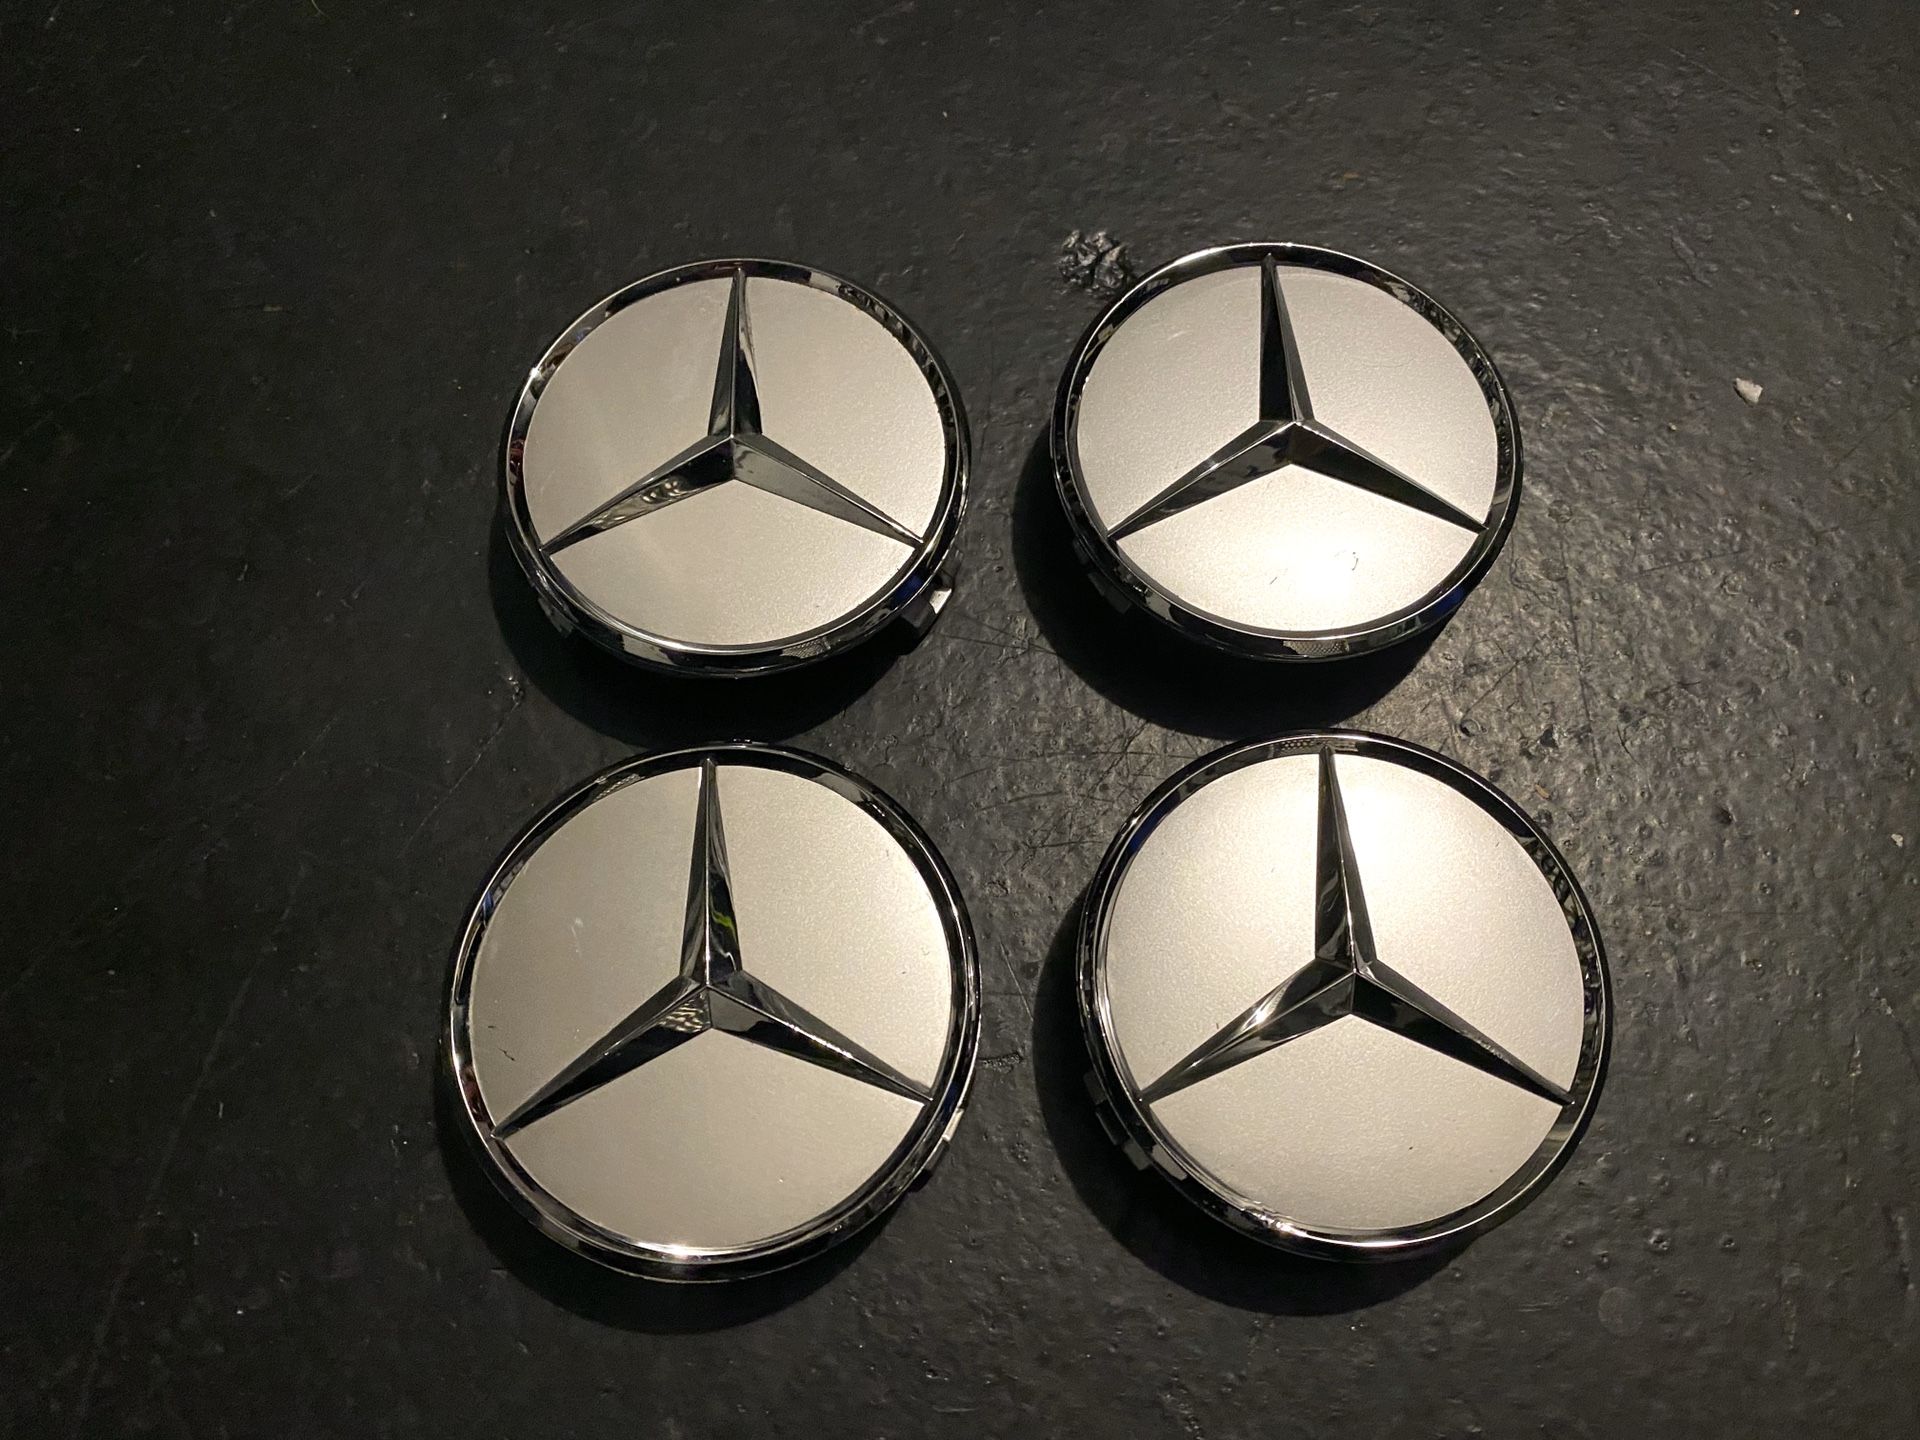 Mercedes Benz Center Caps $10/ea